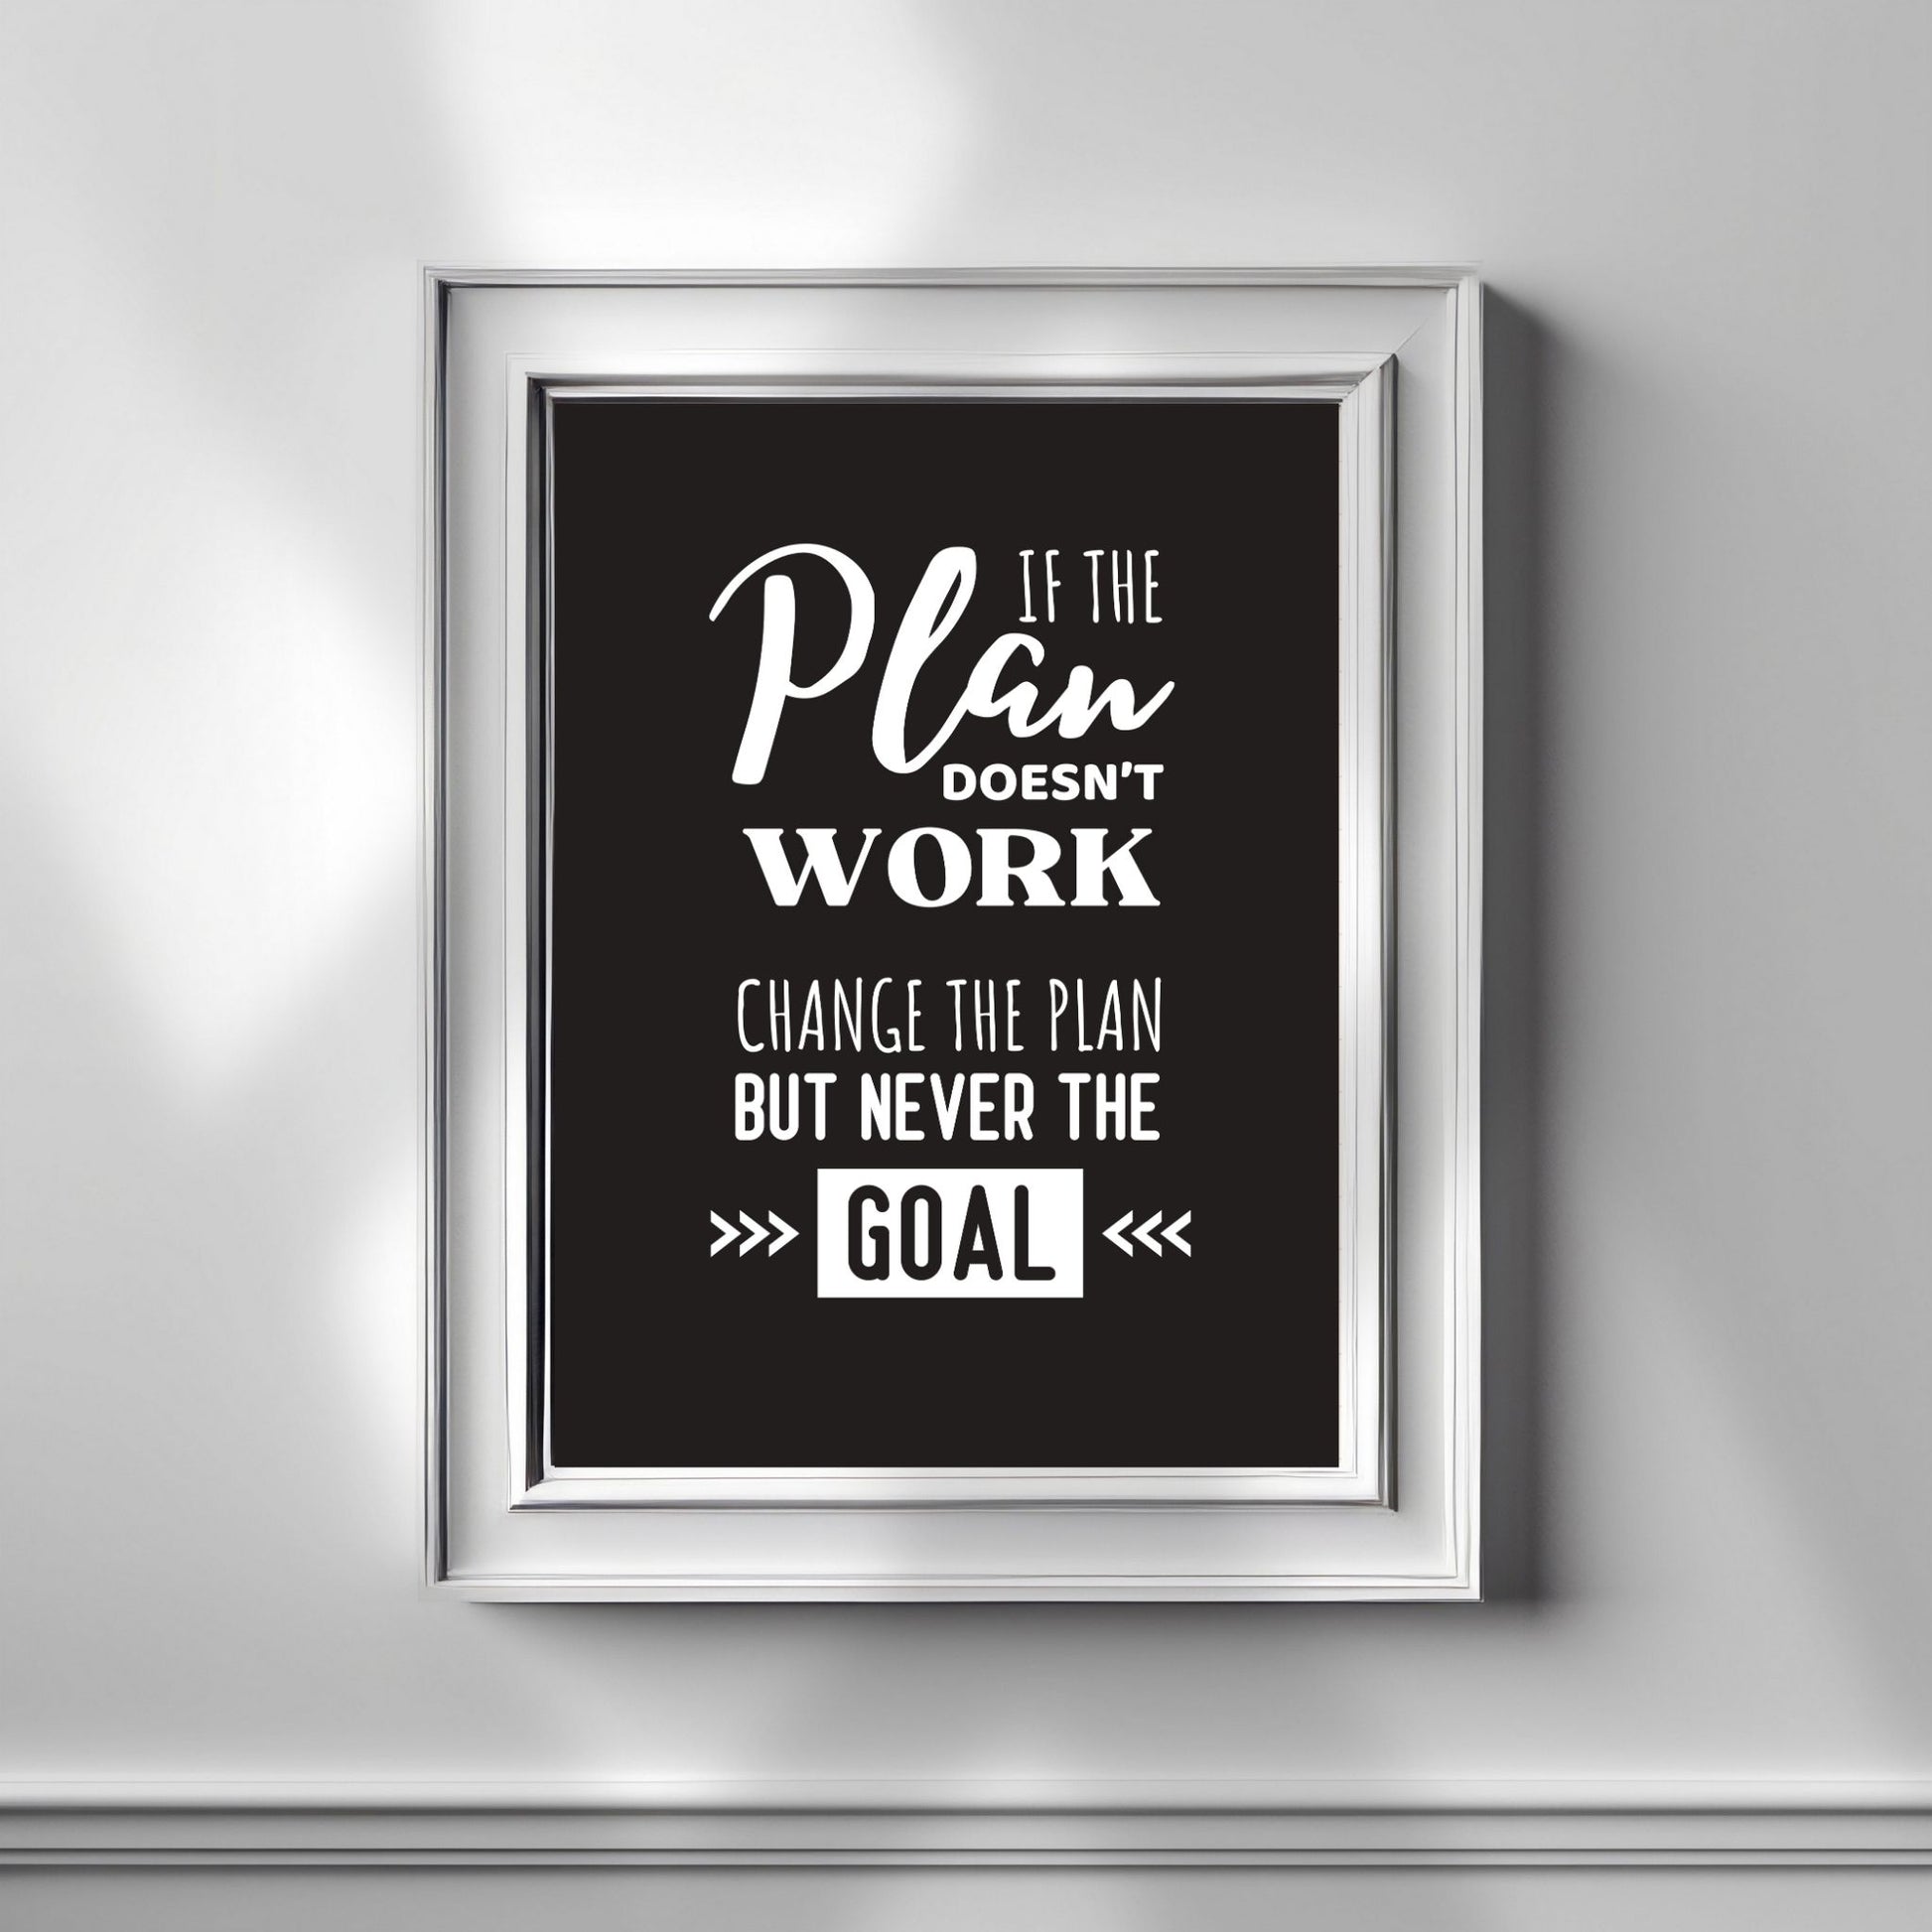 Grafisk tekstplakat med hvit skrift på sortbakgrunn og tekst "If the plan doesn't work, change the plan but never the goal". Illustrasjon viser plakat i hvit ramme.